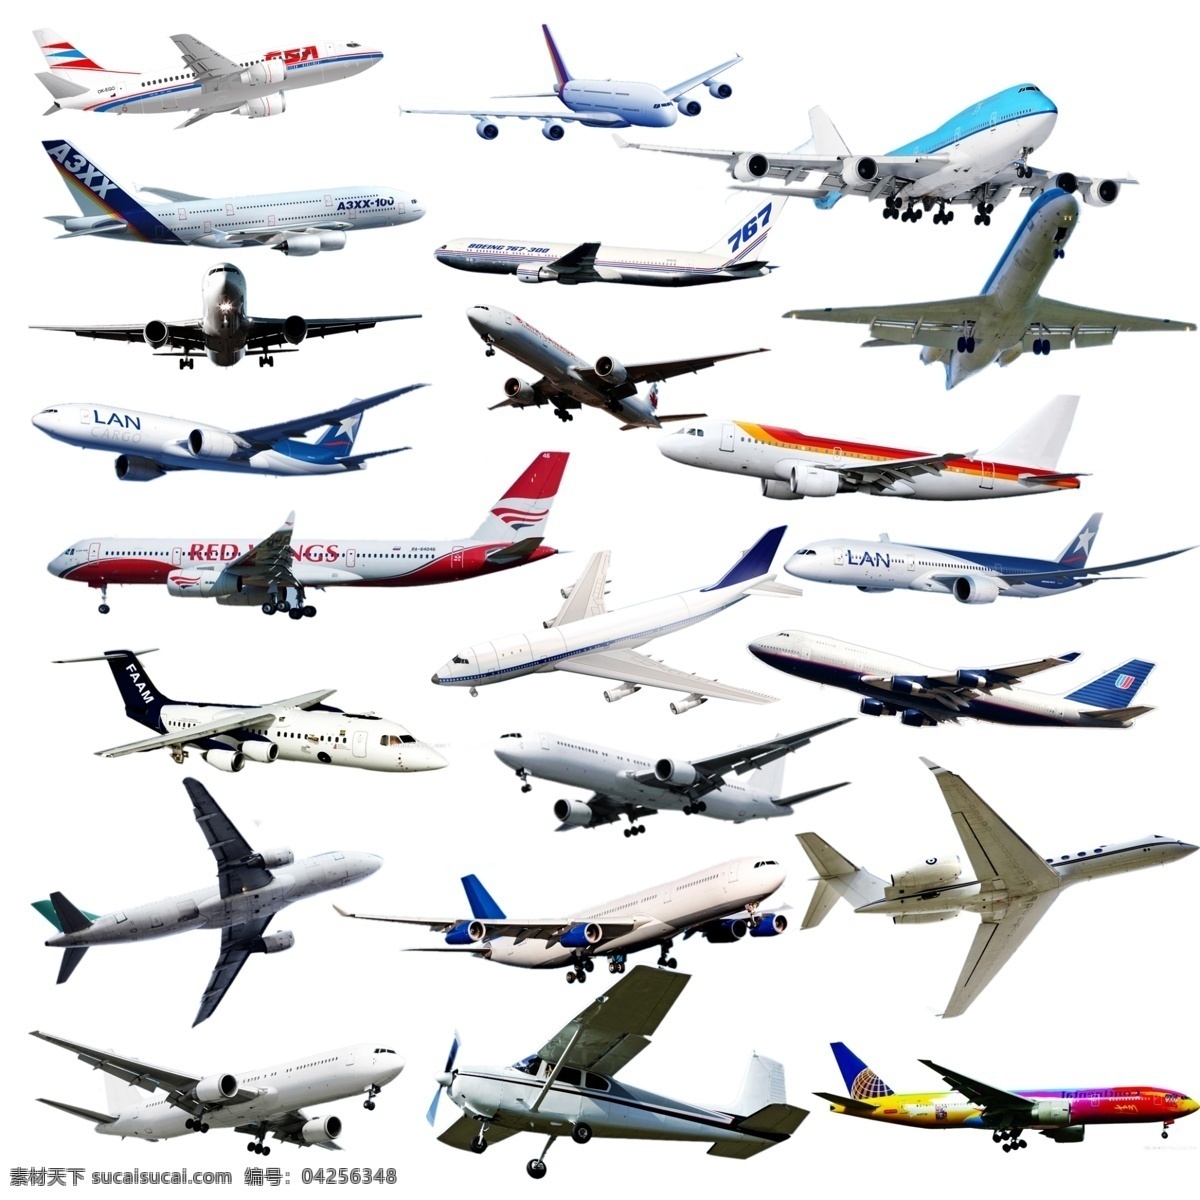 飞机素材 飞机 直升机 战斗机 客机 民航机 航天 运输机 分层素材集合 飞机抠图